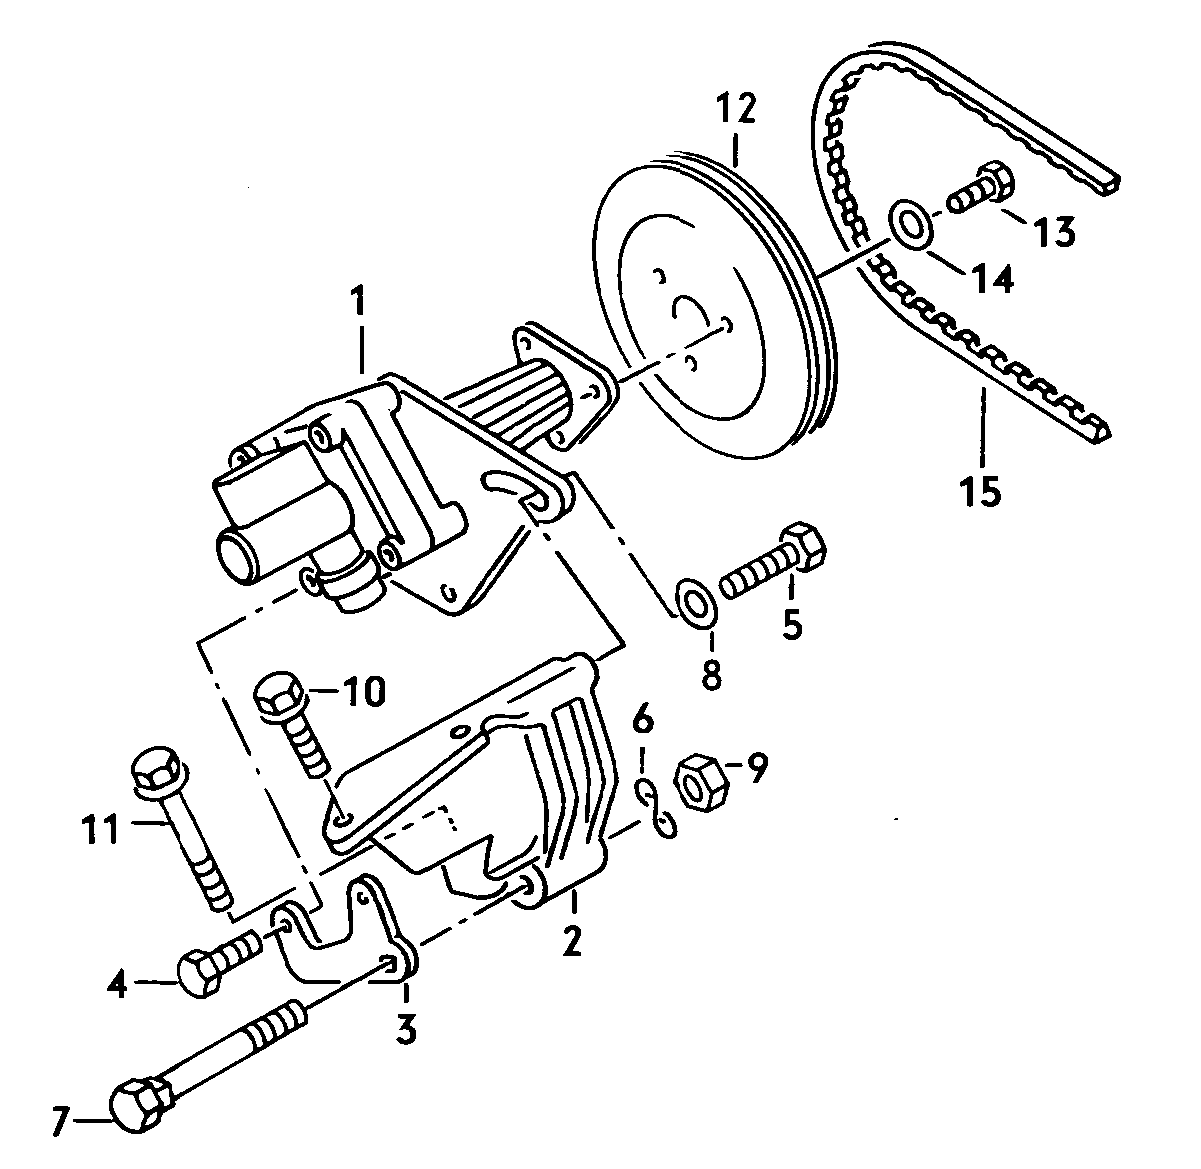 pompa idraulicaper servosterzo 1,9/2,1 l - Typ 2/syncro - t2